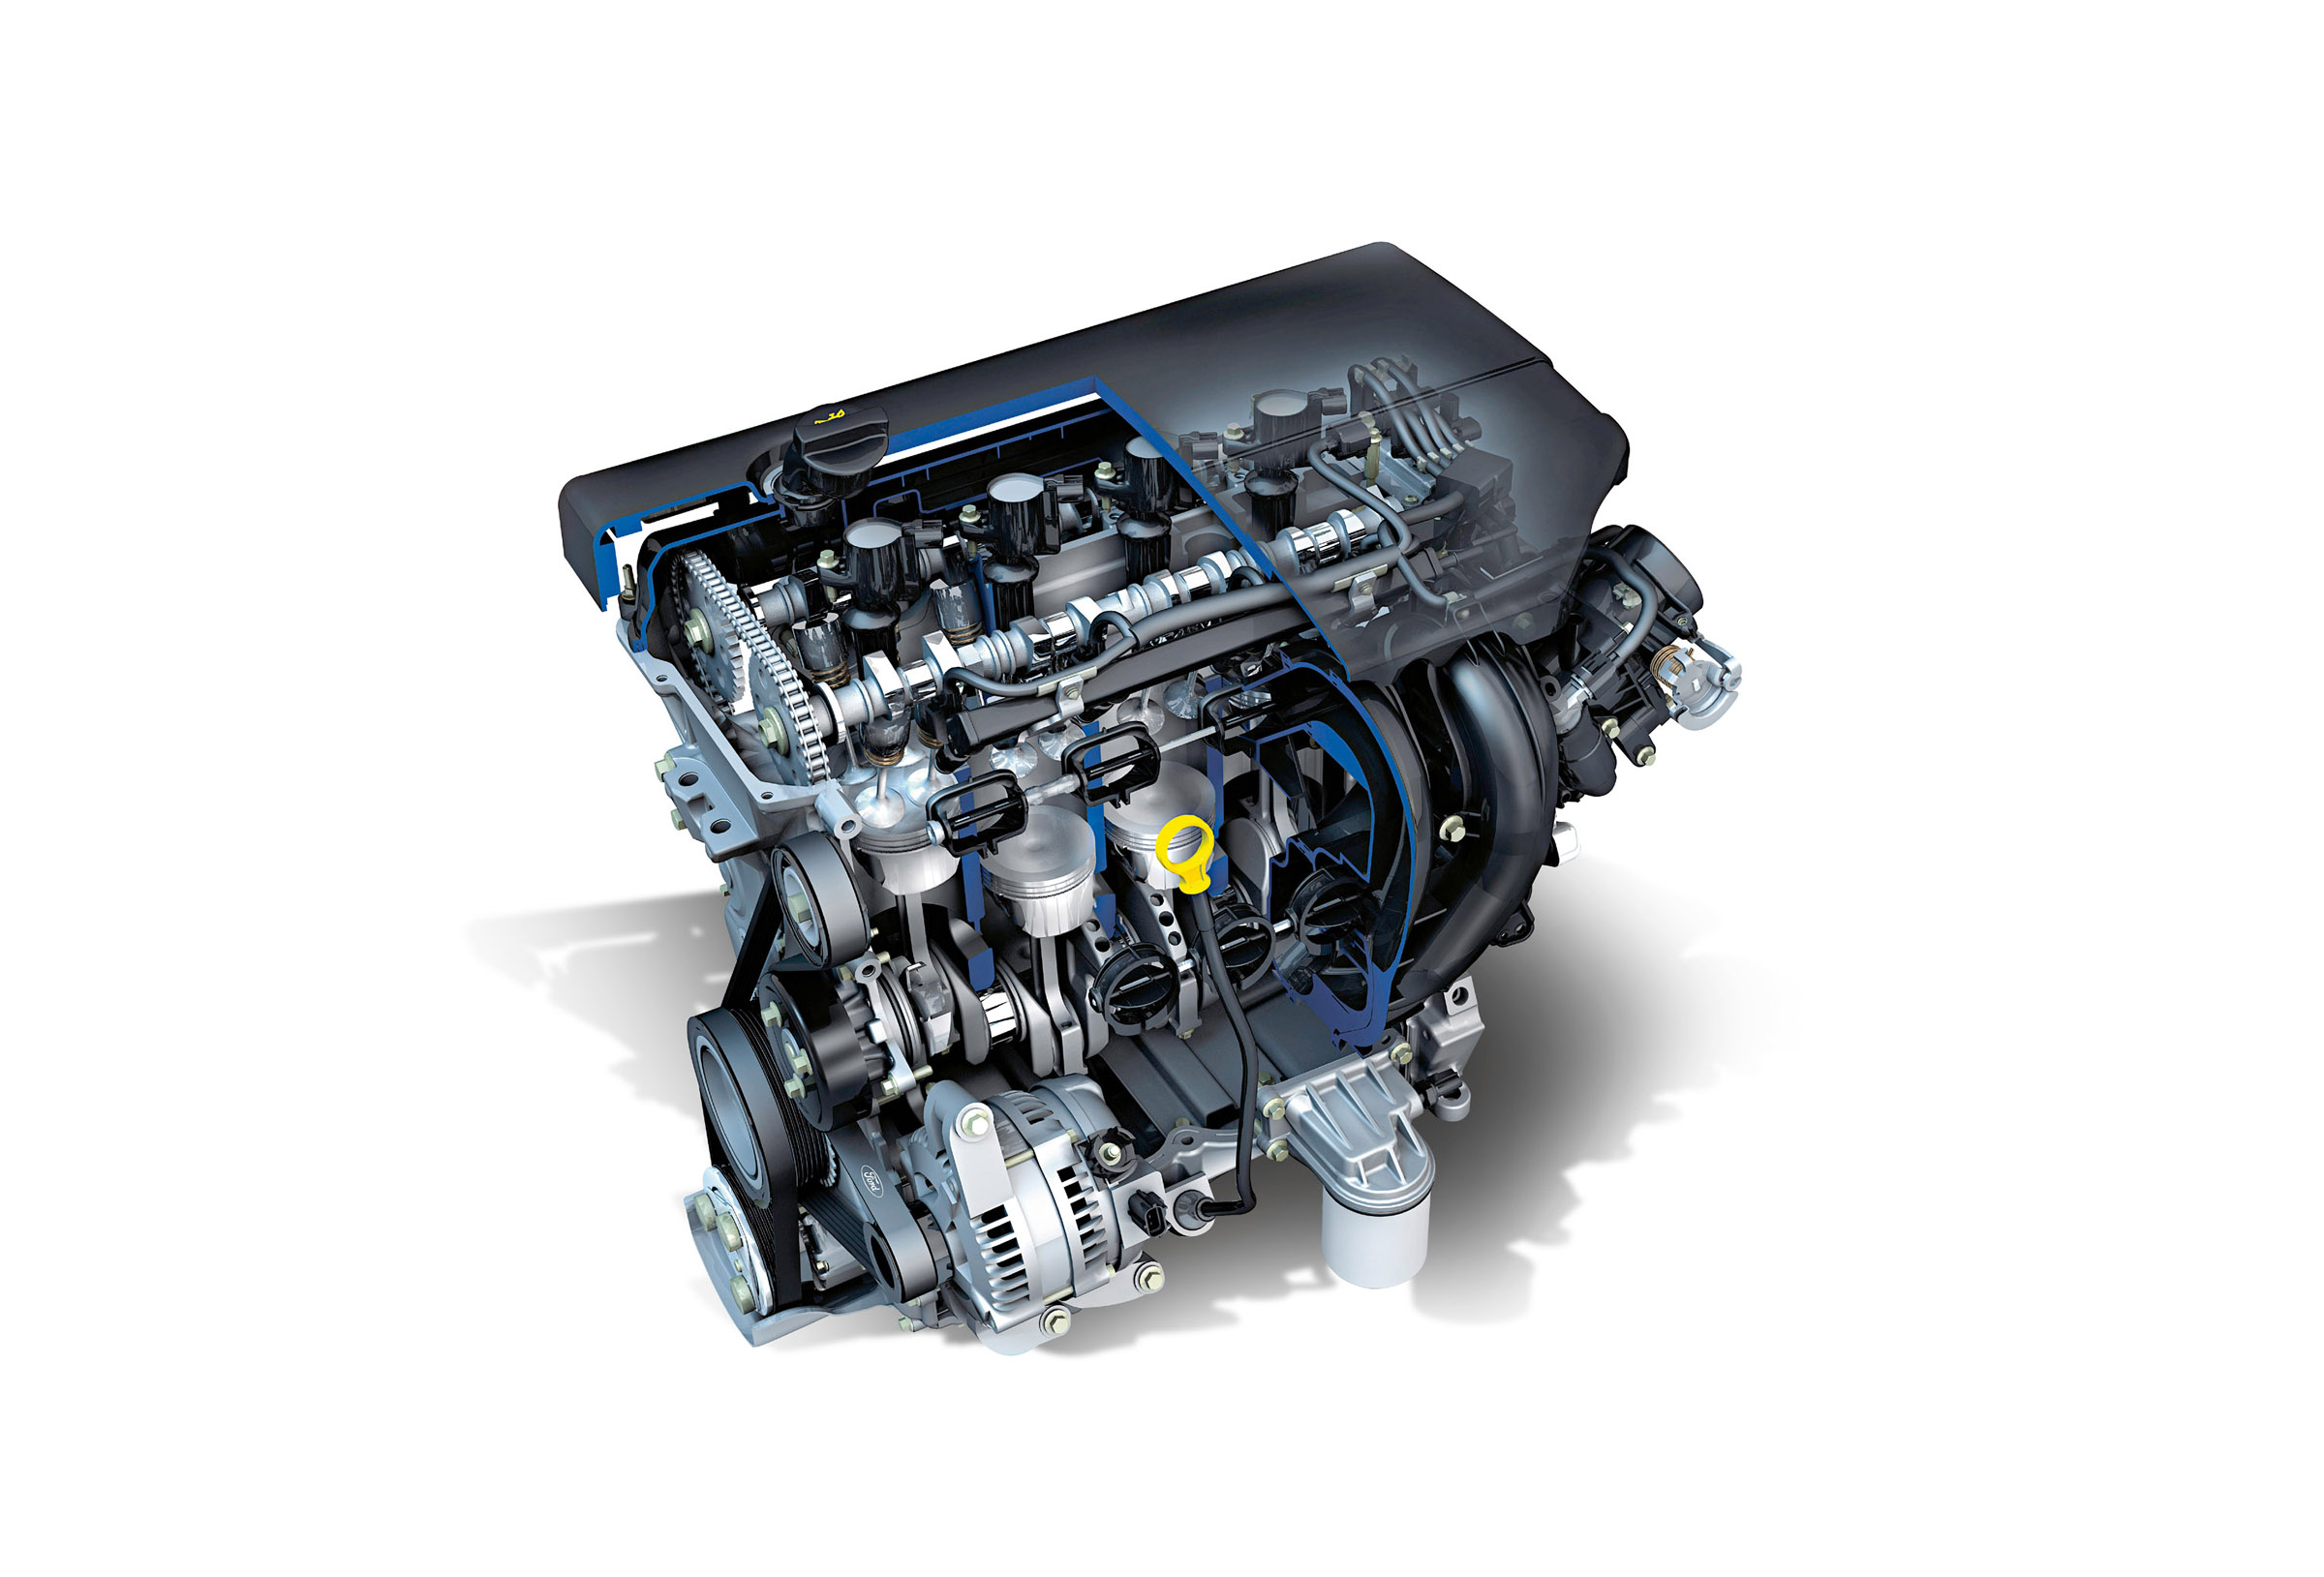 Ремонт двигателей ford. Duratorq TDCI 2.0. Двигатель Duratec 2.0. Мотор Форд фокус 2 2.0. 2.0L Duratorq-TDCI (143ps) мотор.